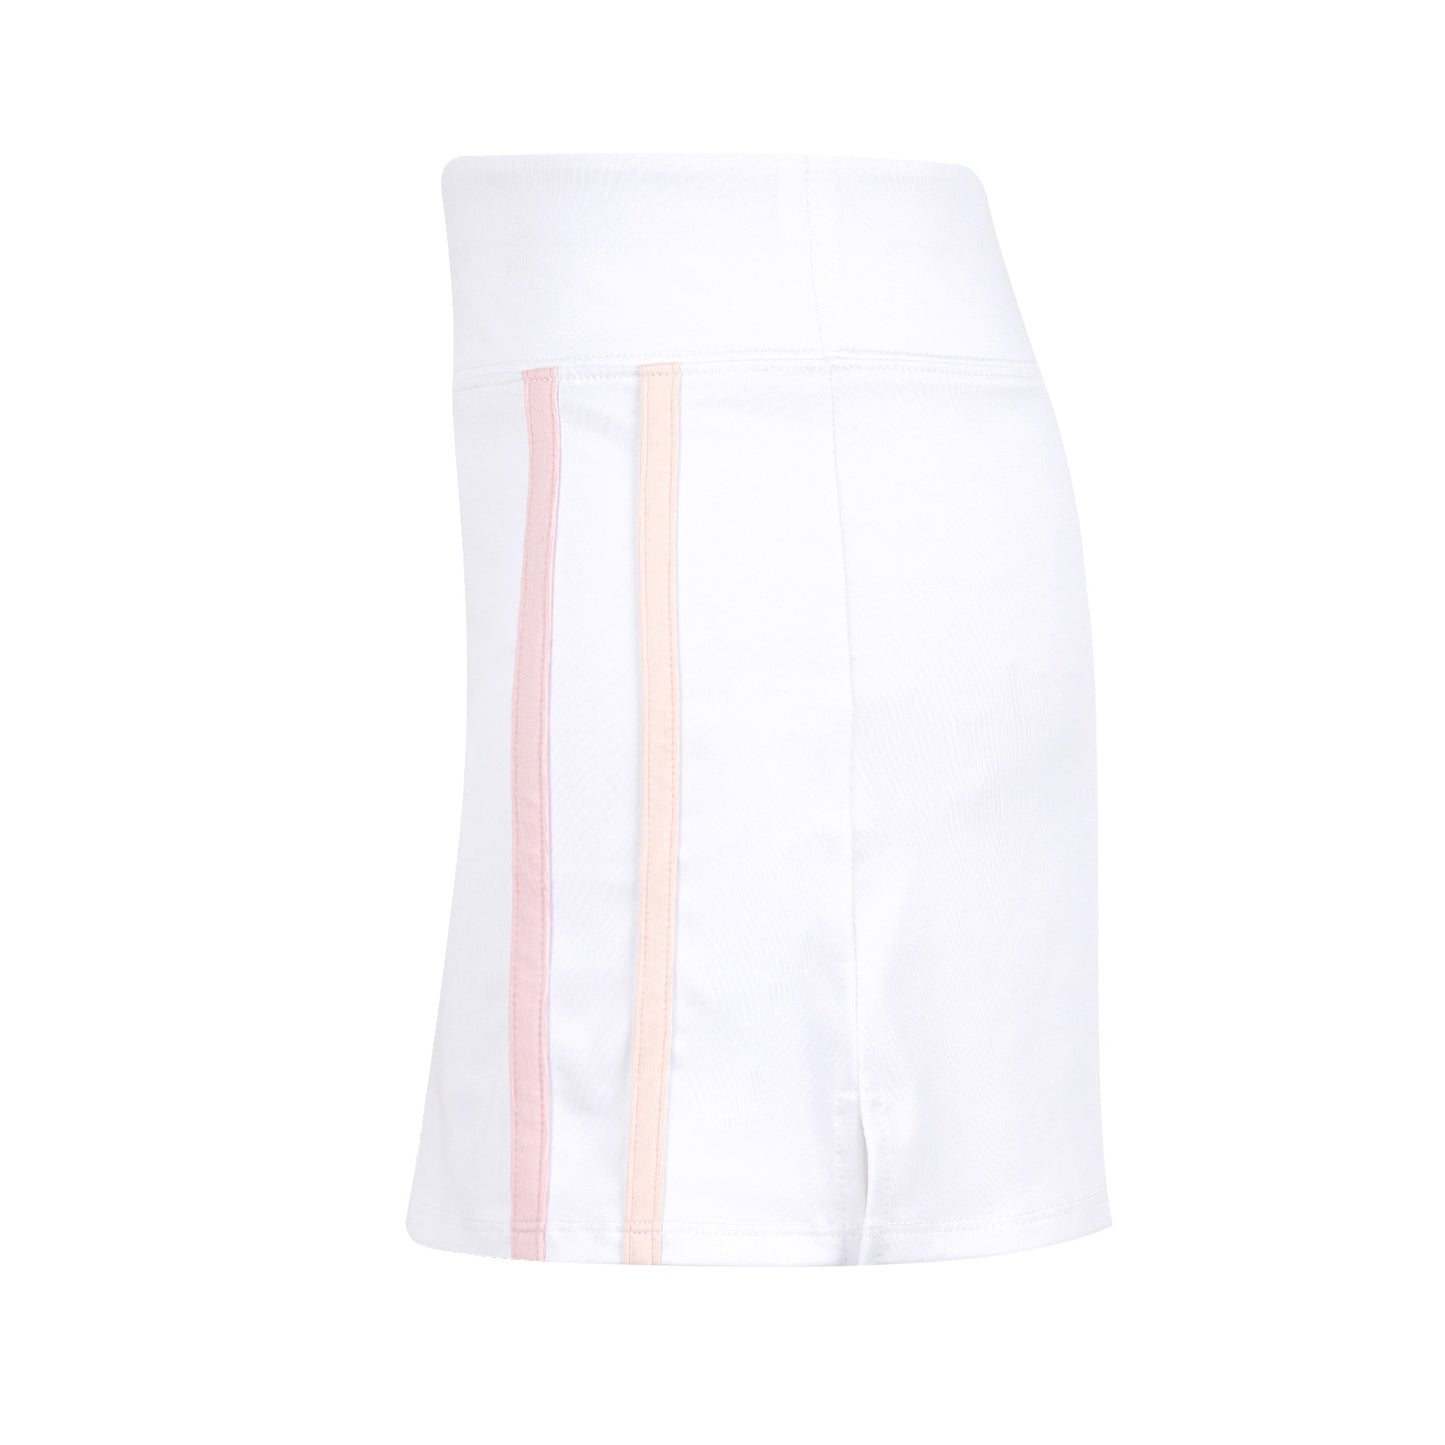 Carnival Lights White Racer Stripe Skirt - New!